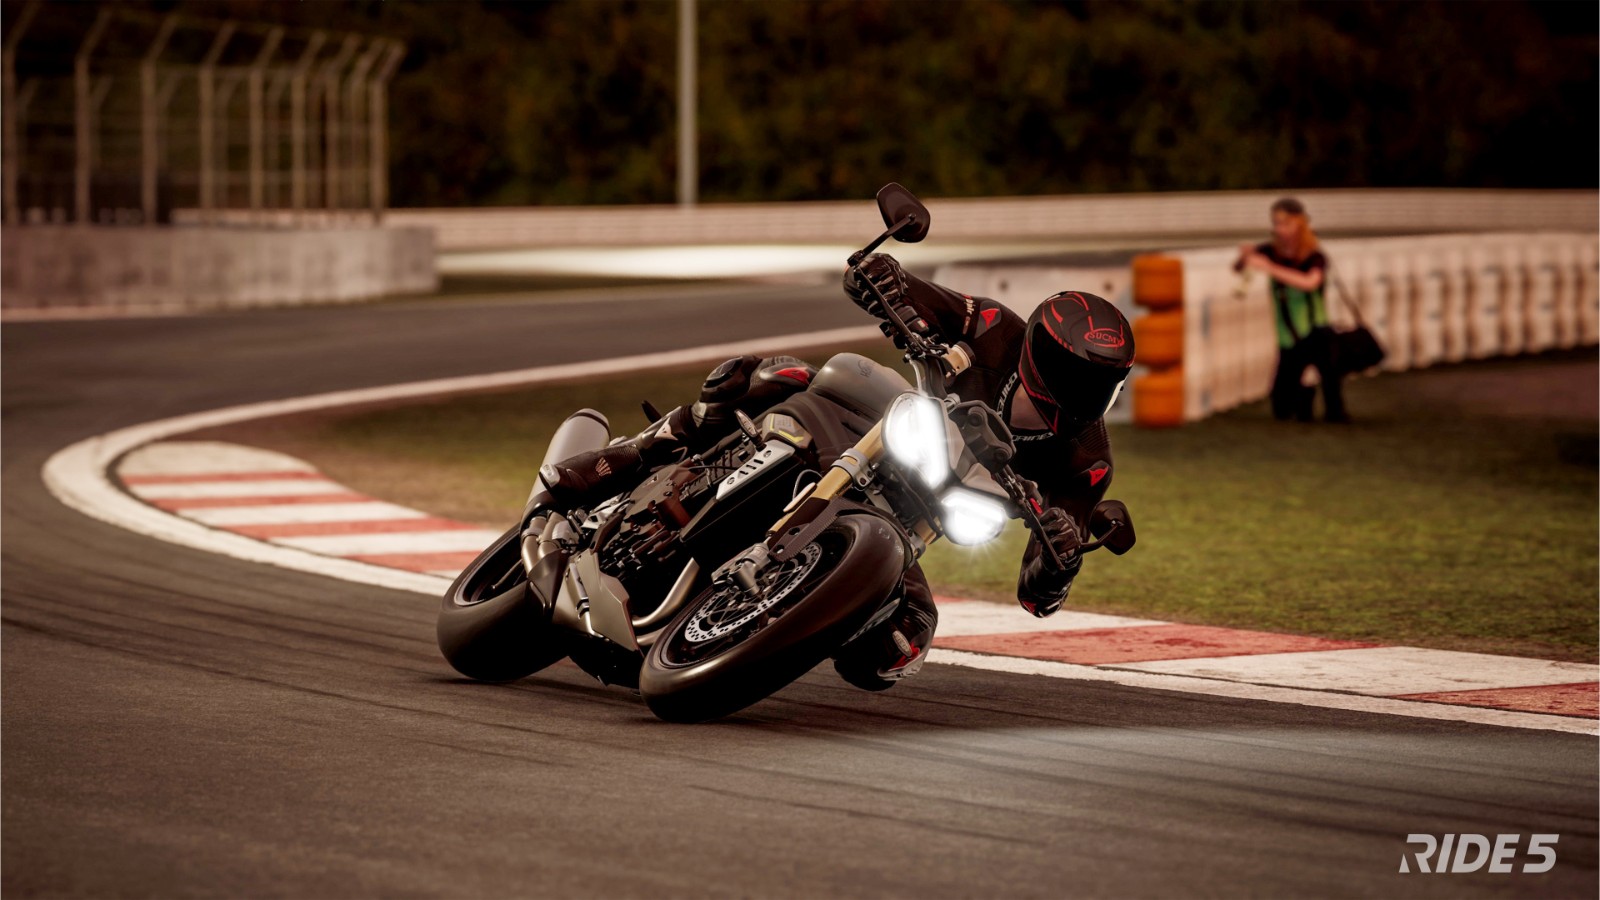 摩托竞速游戏《极速骑行5》公布 截图和预告片分享 二次世界 第4张